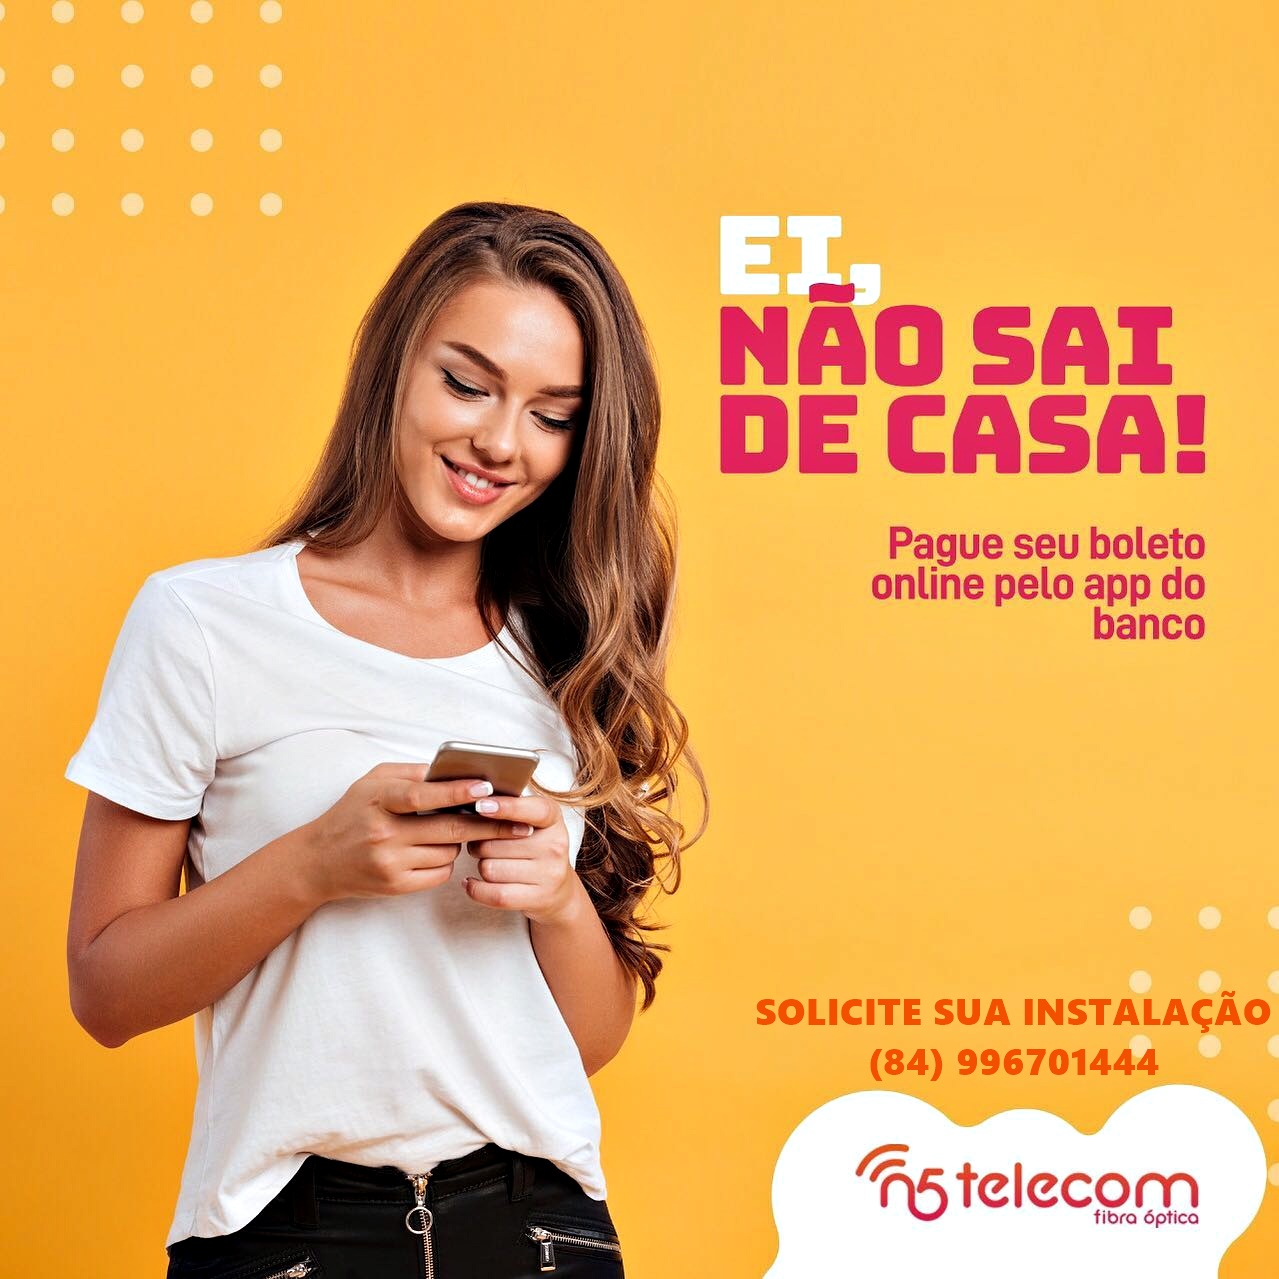 N5 TELECOM INTERNET DE QUALIDADE EM CERRO CORÁ